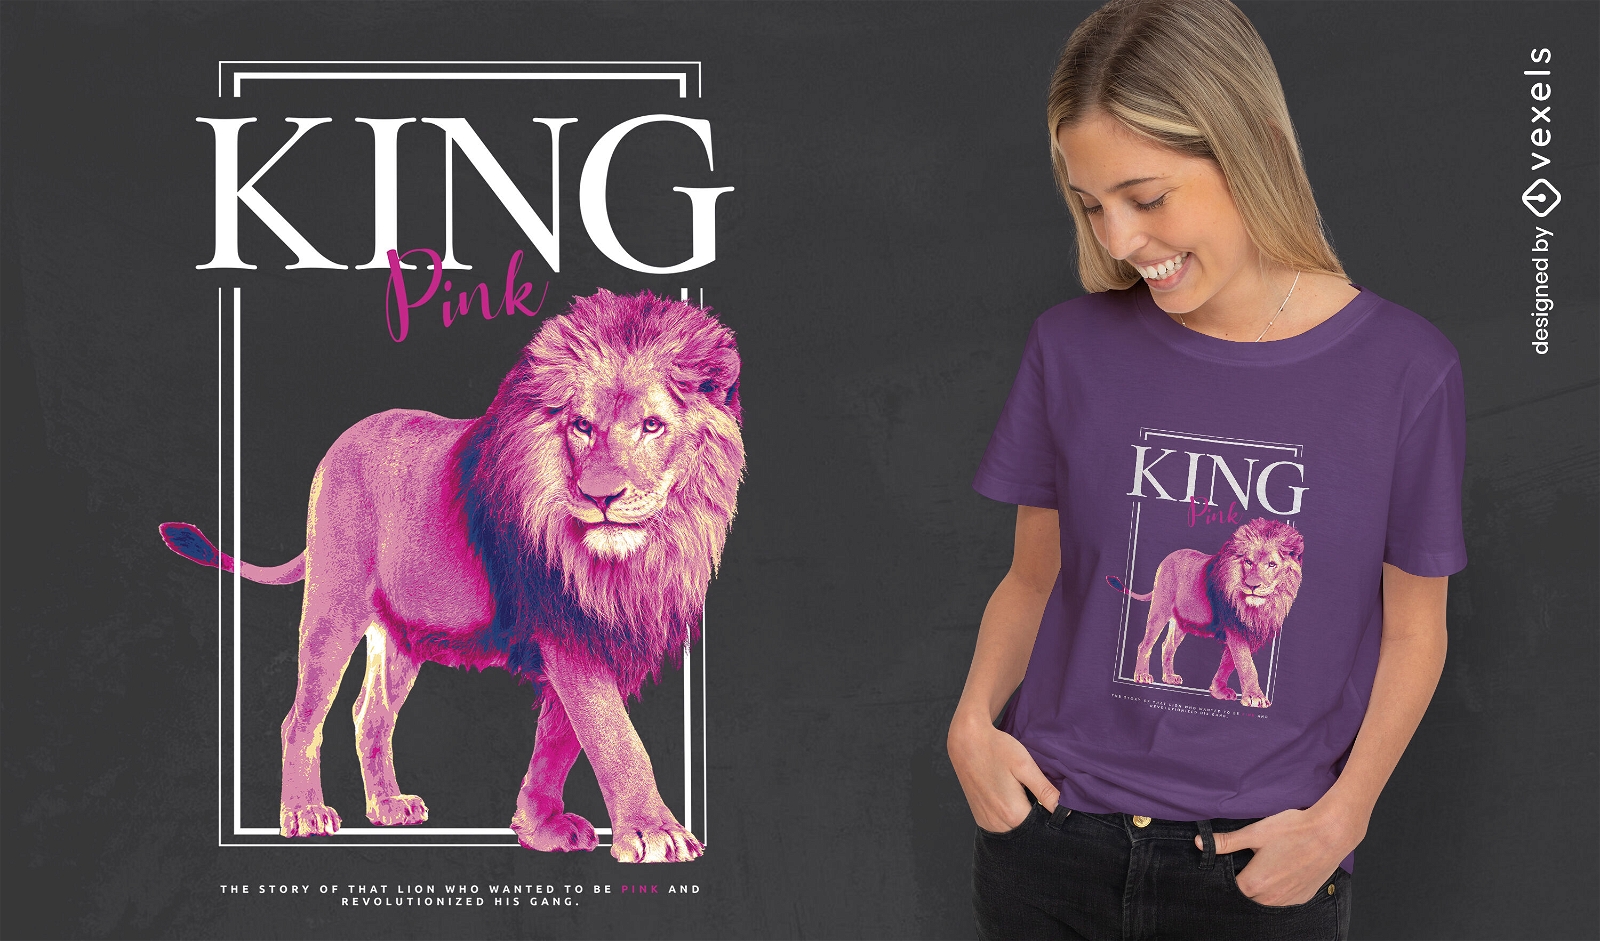 Diseño realista de camiseta del rey león.